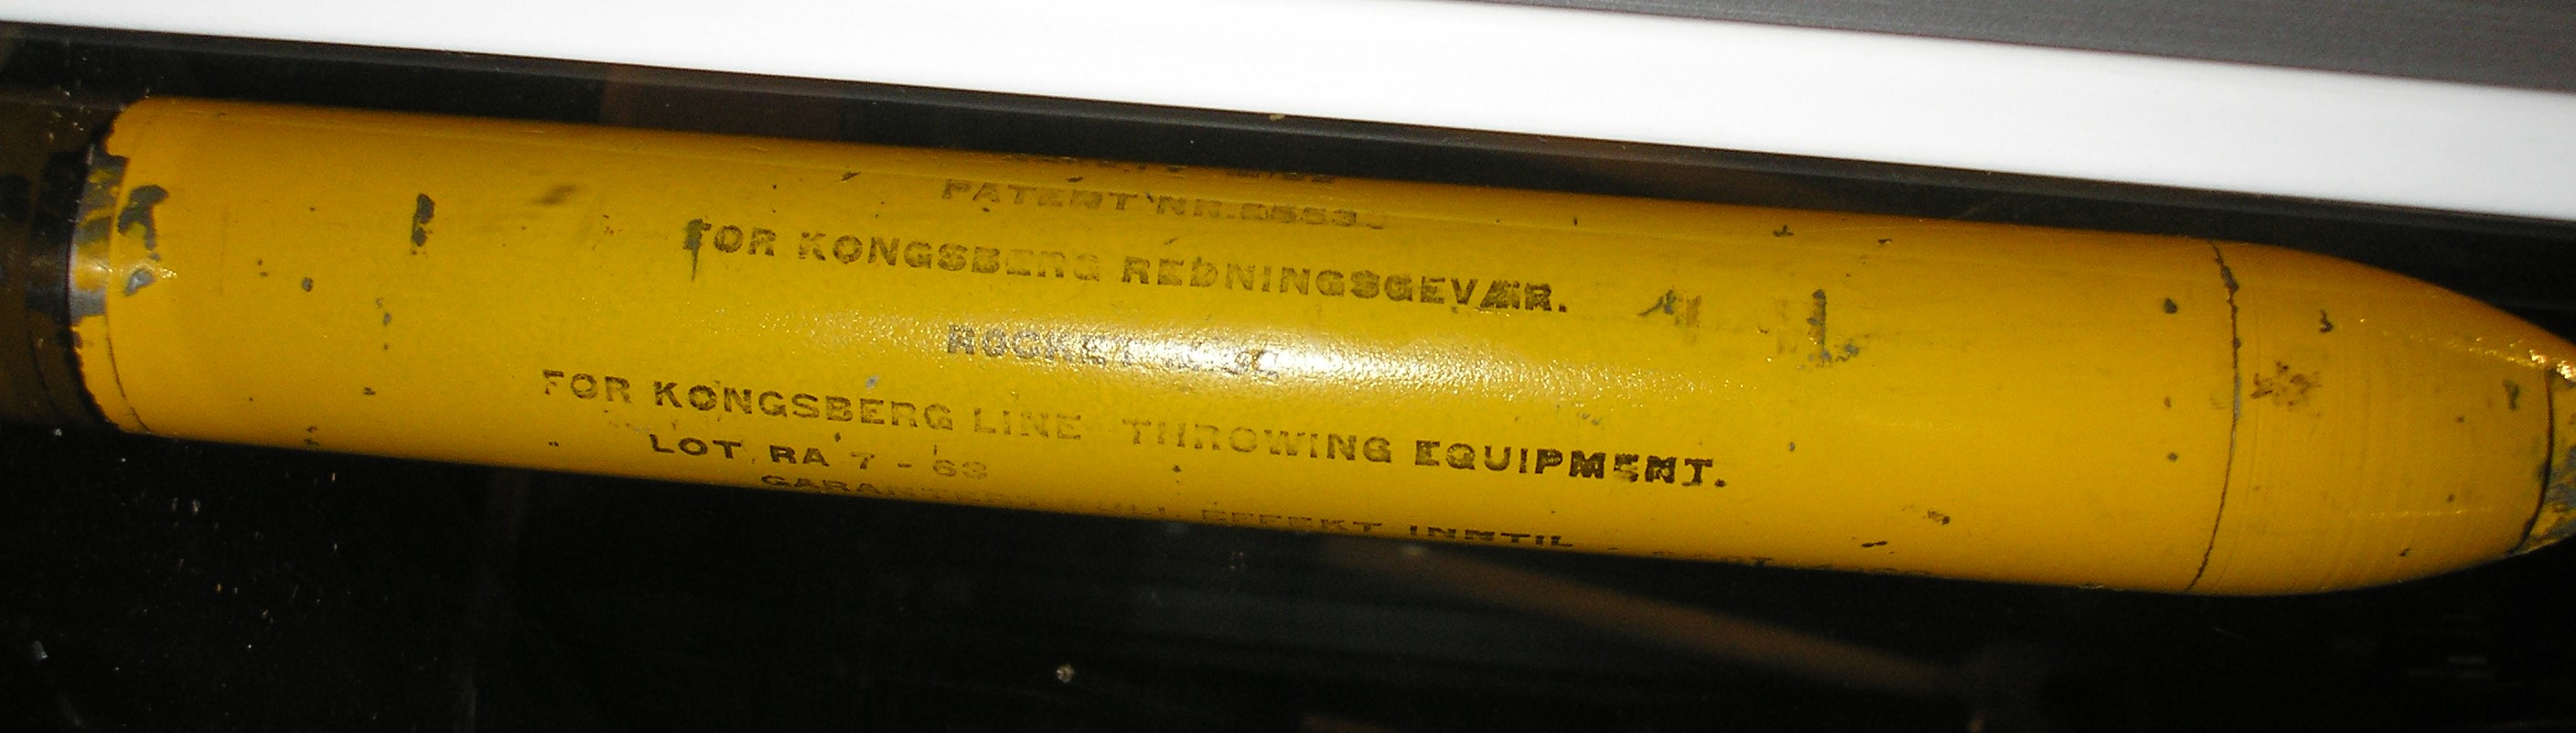 ./ammo/fangstredning/patroner/Ammo-Redning-m52-rakett-2.JPG